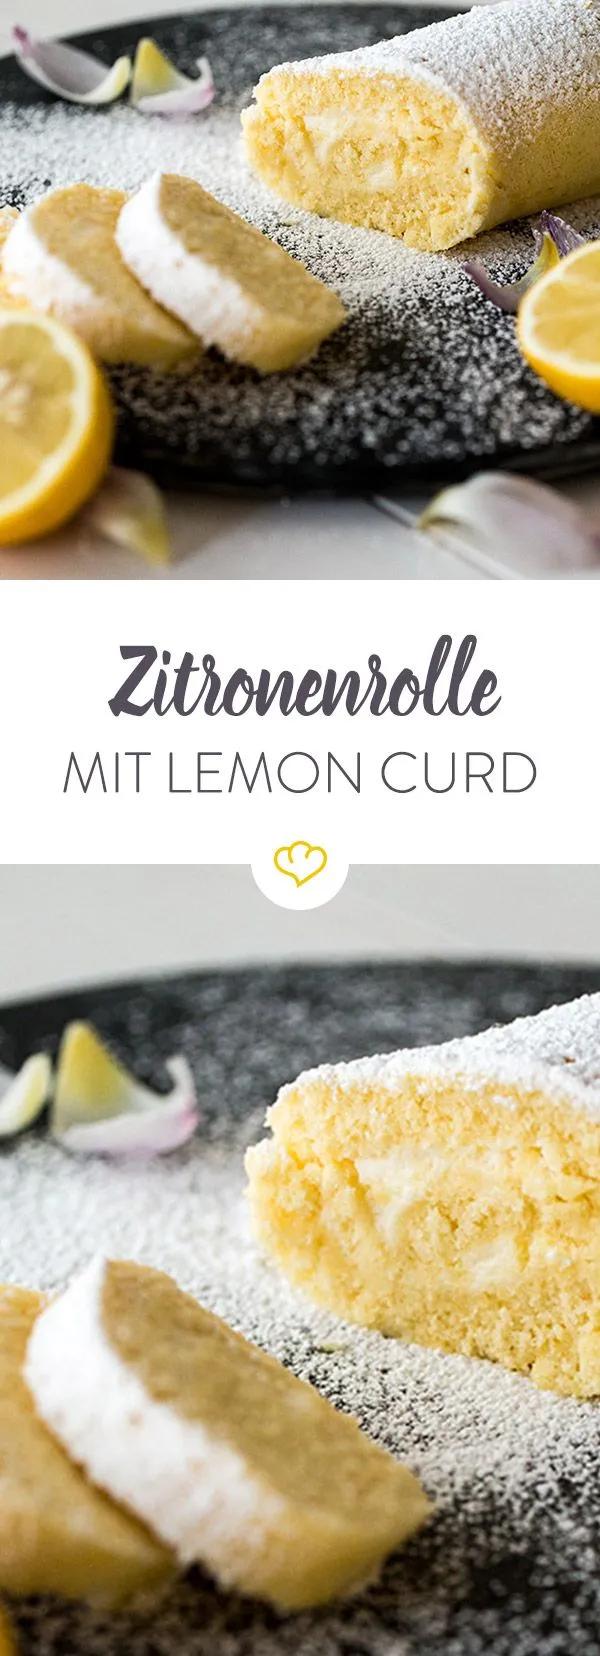 Zitronenrolle mit Lemon Curd | Rezept | Zitronenrolle, Zitronen rolle ...